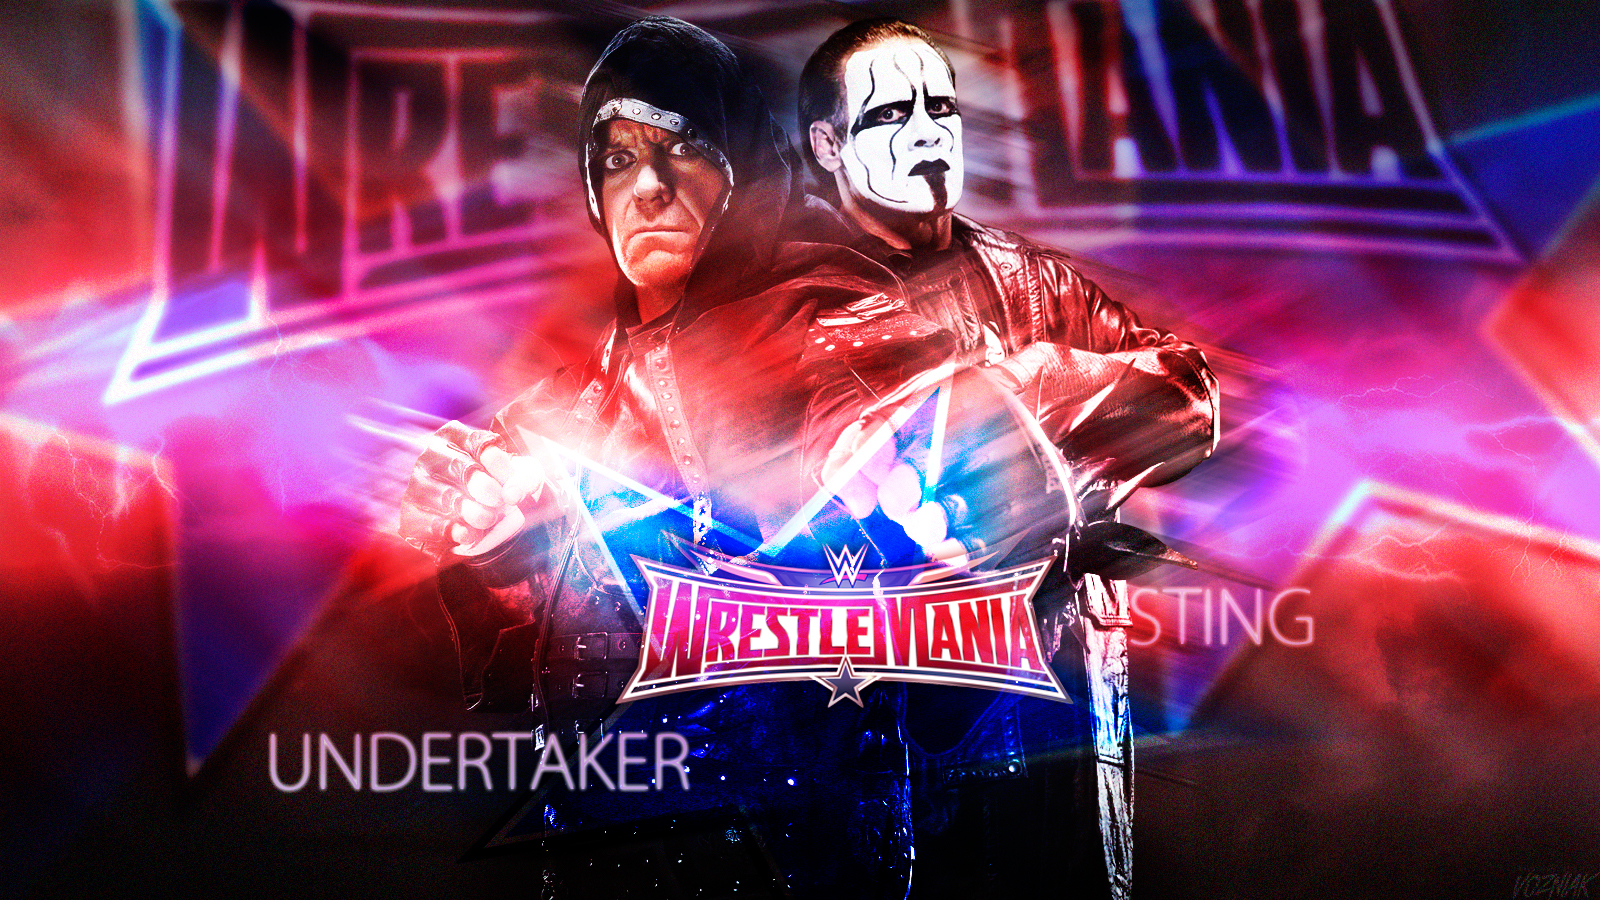 The Undertaker vs Sting en WWE WrestleMania 32 Wallpaper by